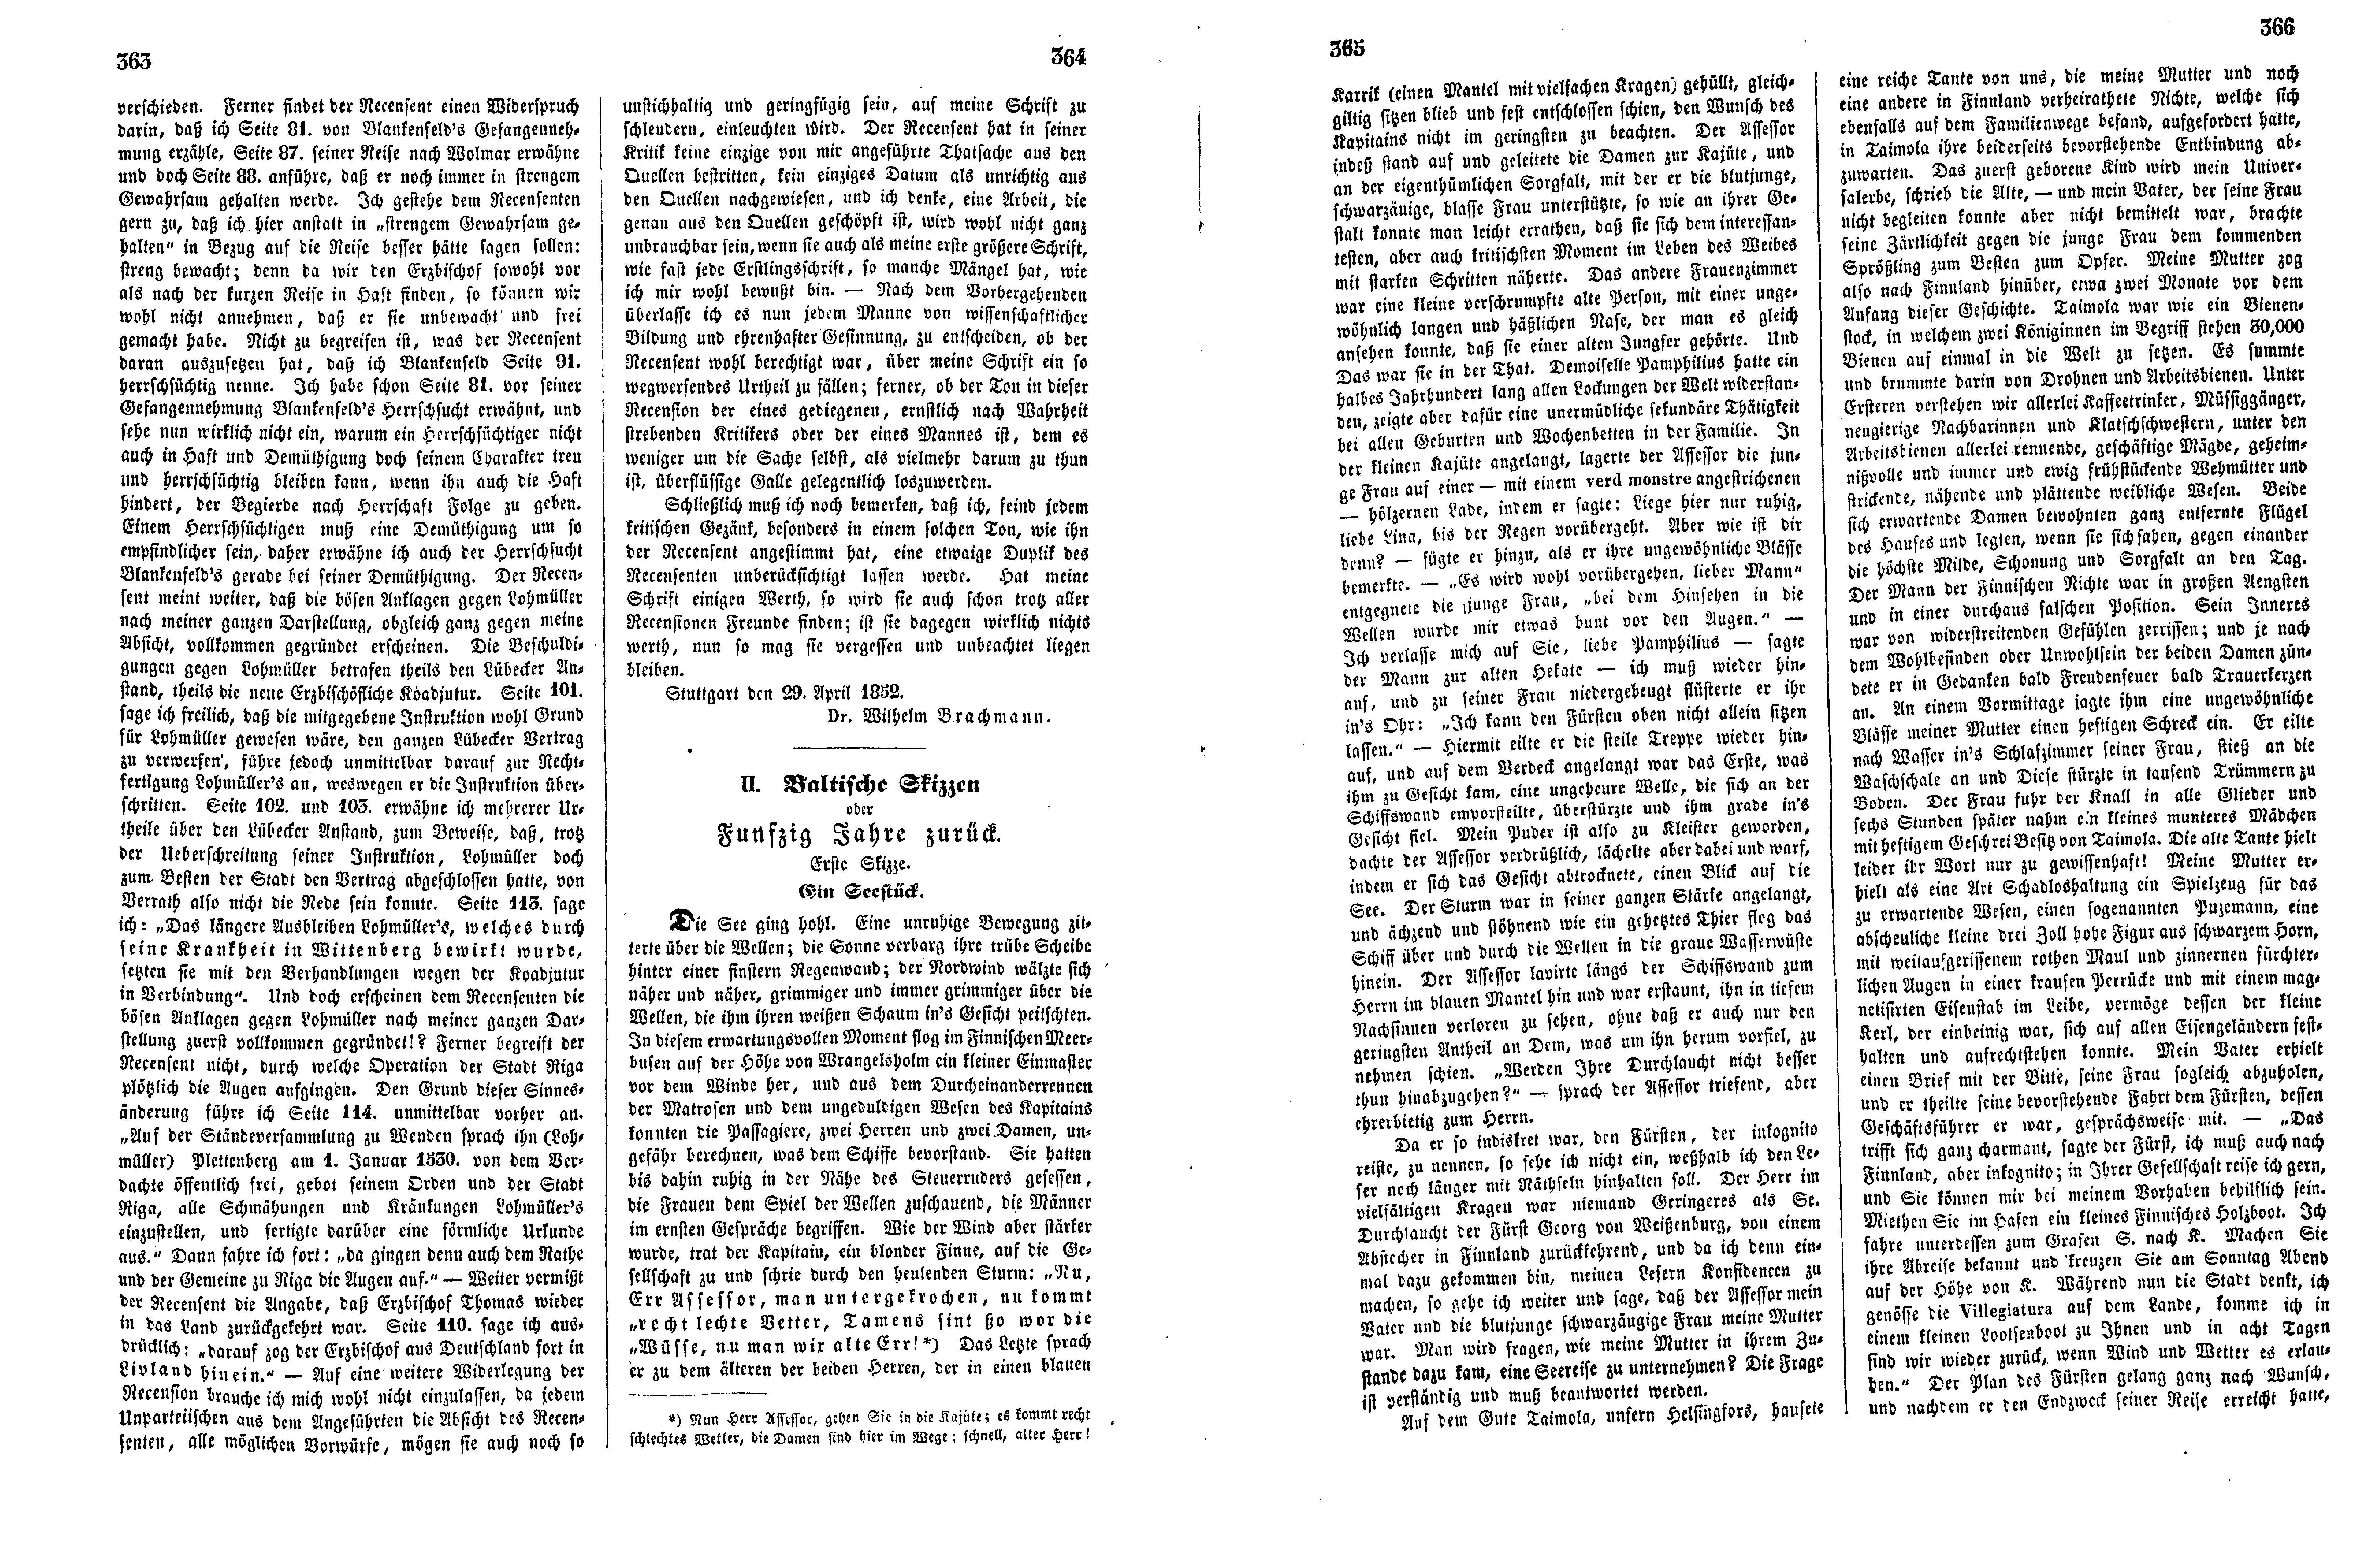 Baltische Skizzen oder Funfzig Jahre zurück [01] (Ein Seestück) (1852) | 1. (363-366) Main body of text